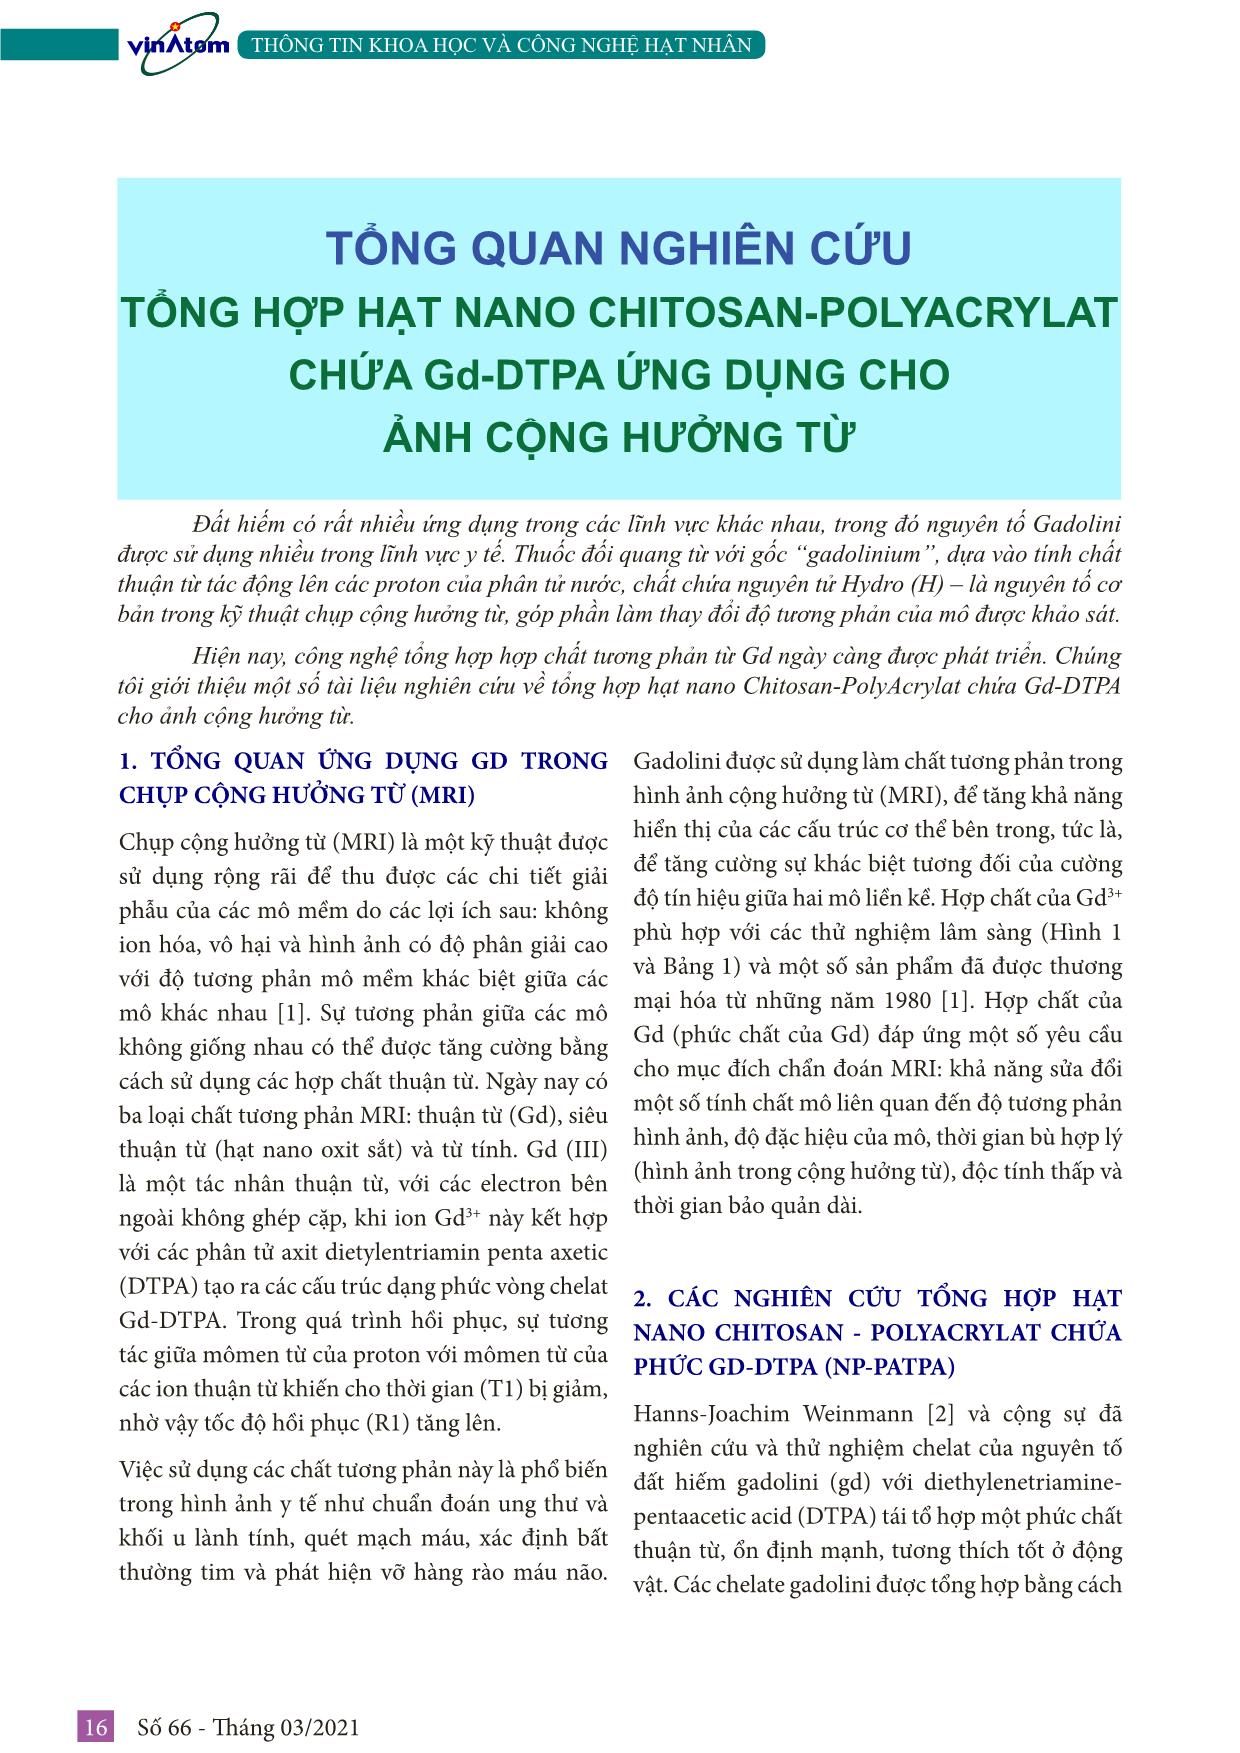 Tổng quan nghiên cứu tổng hợp hạt nano Chitosan-Polyacrylat chứa Gd-DTPA ứng dụng cho ảnh cộng hưởng từ trang 1